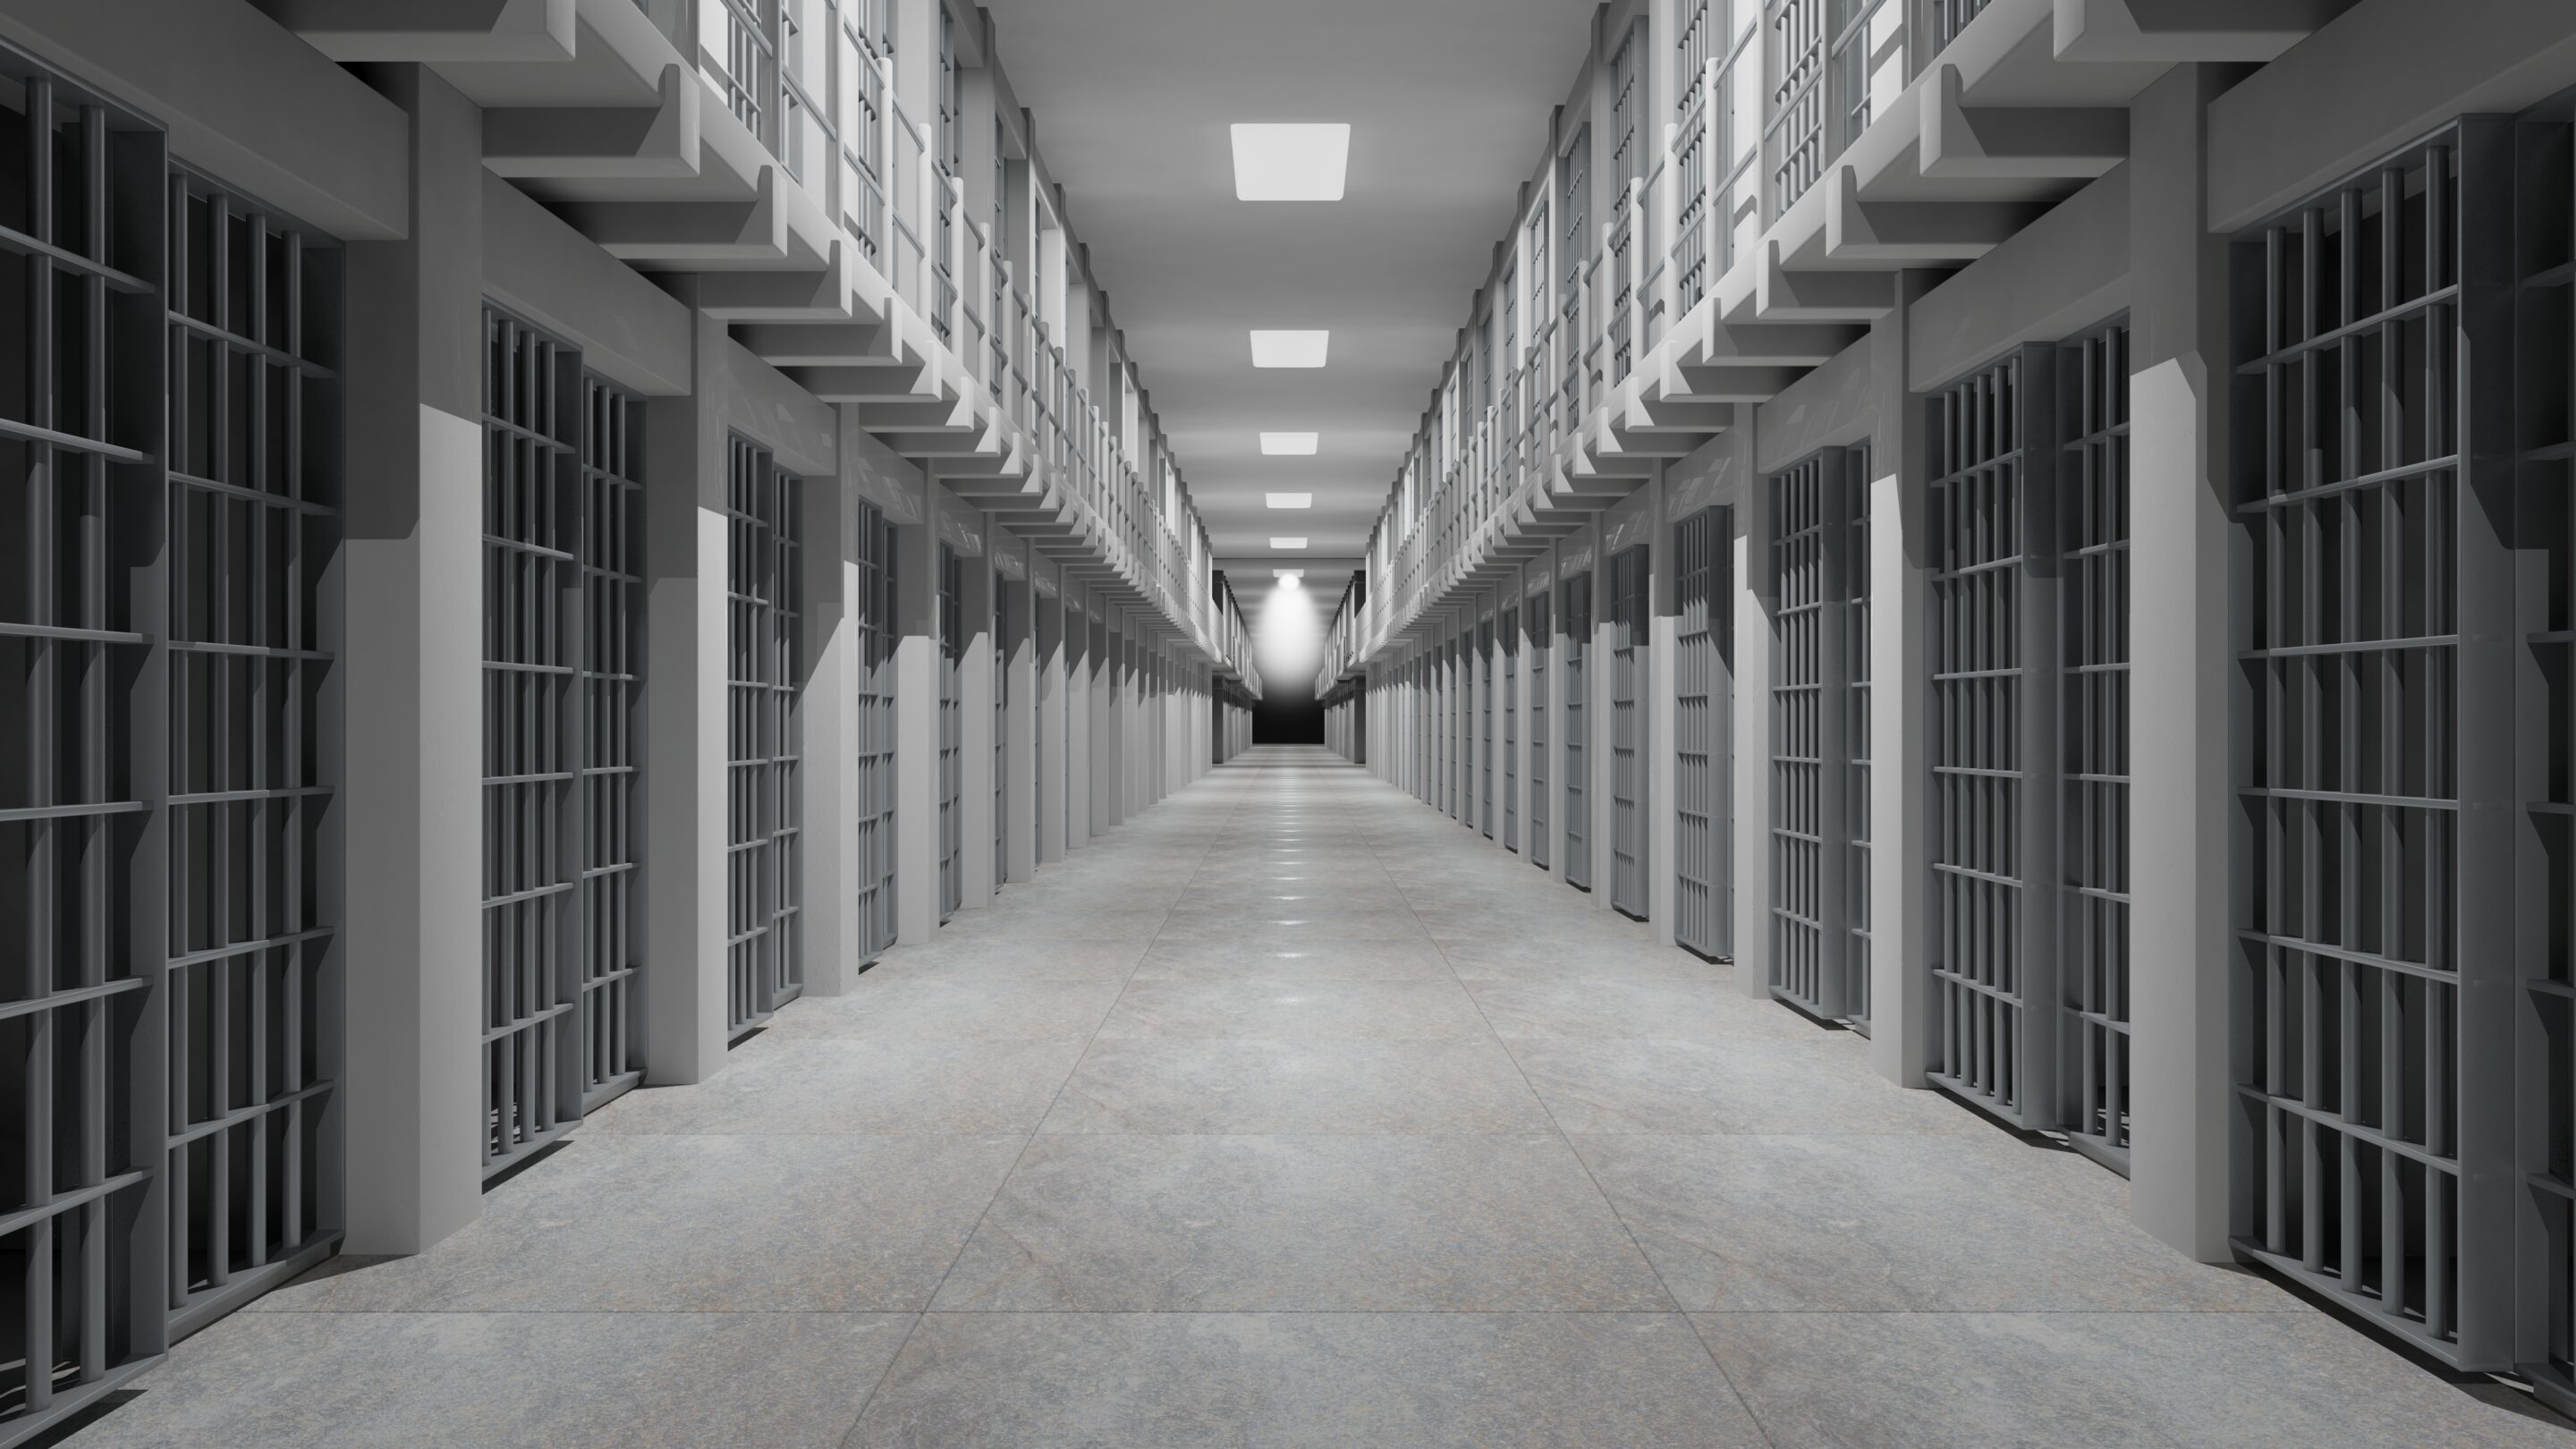 Rows of Prison Cells - Prison Interior